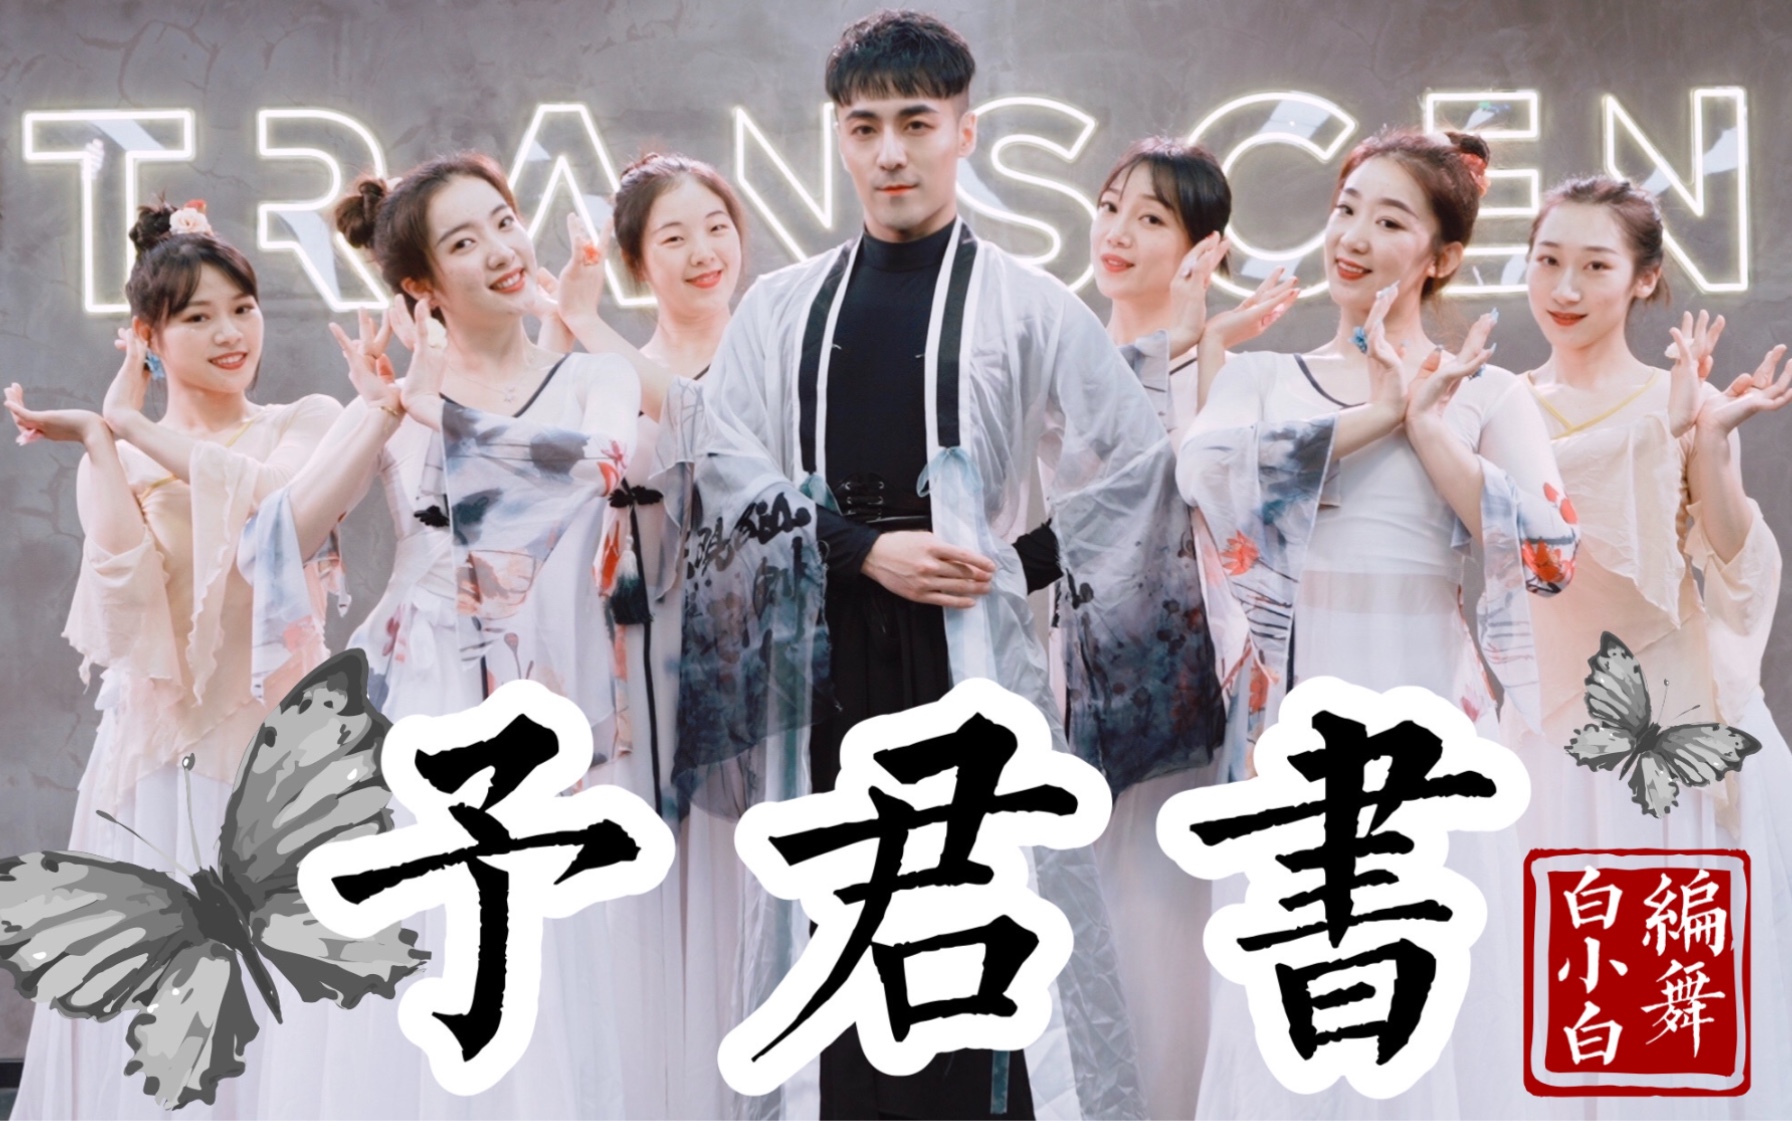 竹马旧 青梅落❀《予君书》超美中国风爵士编舞完整版